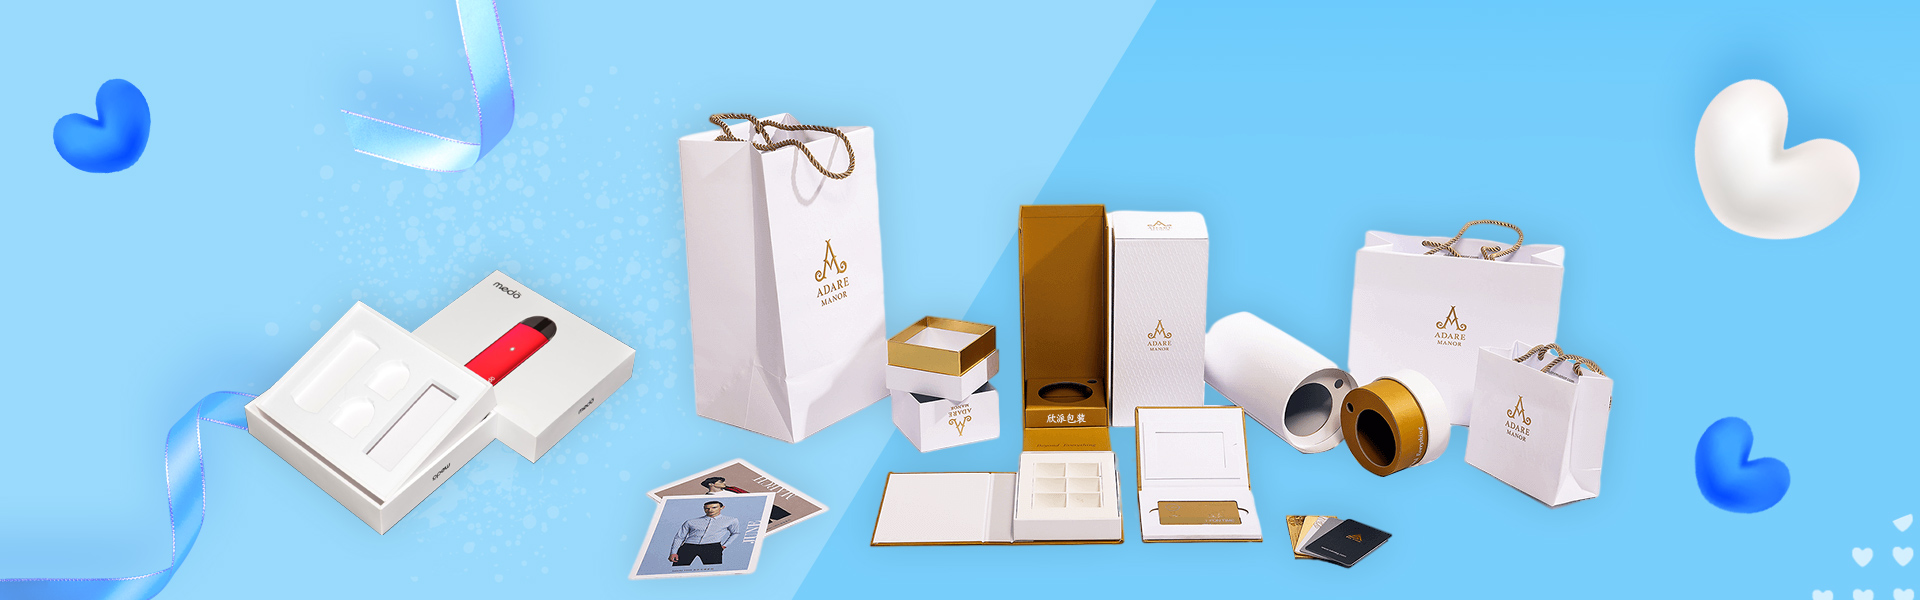 scatola personalizzata, scatola regalo, scatola di bellezza,Beifan Packaging Co., Ltd.